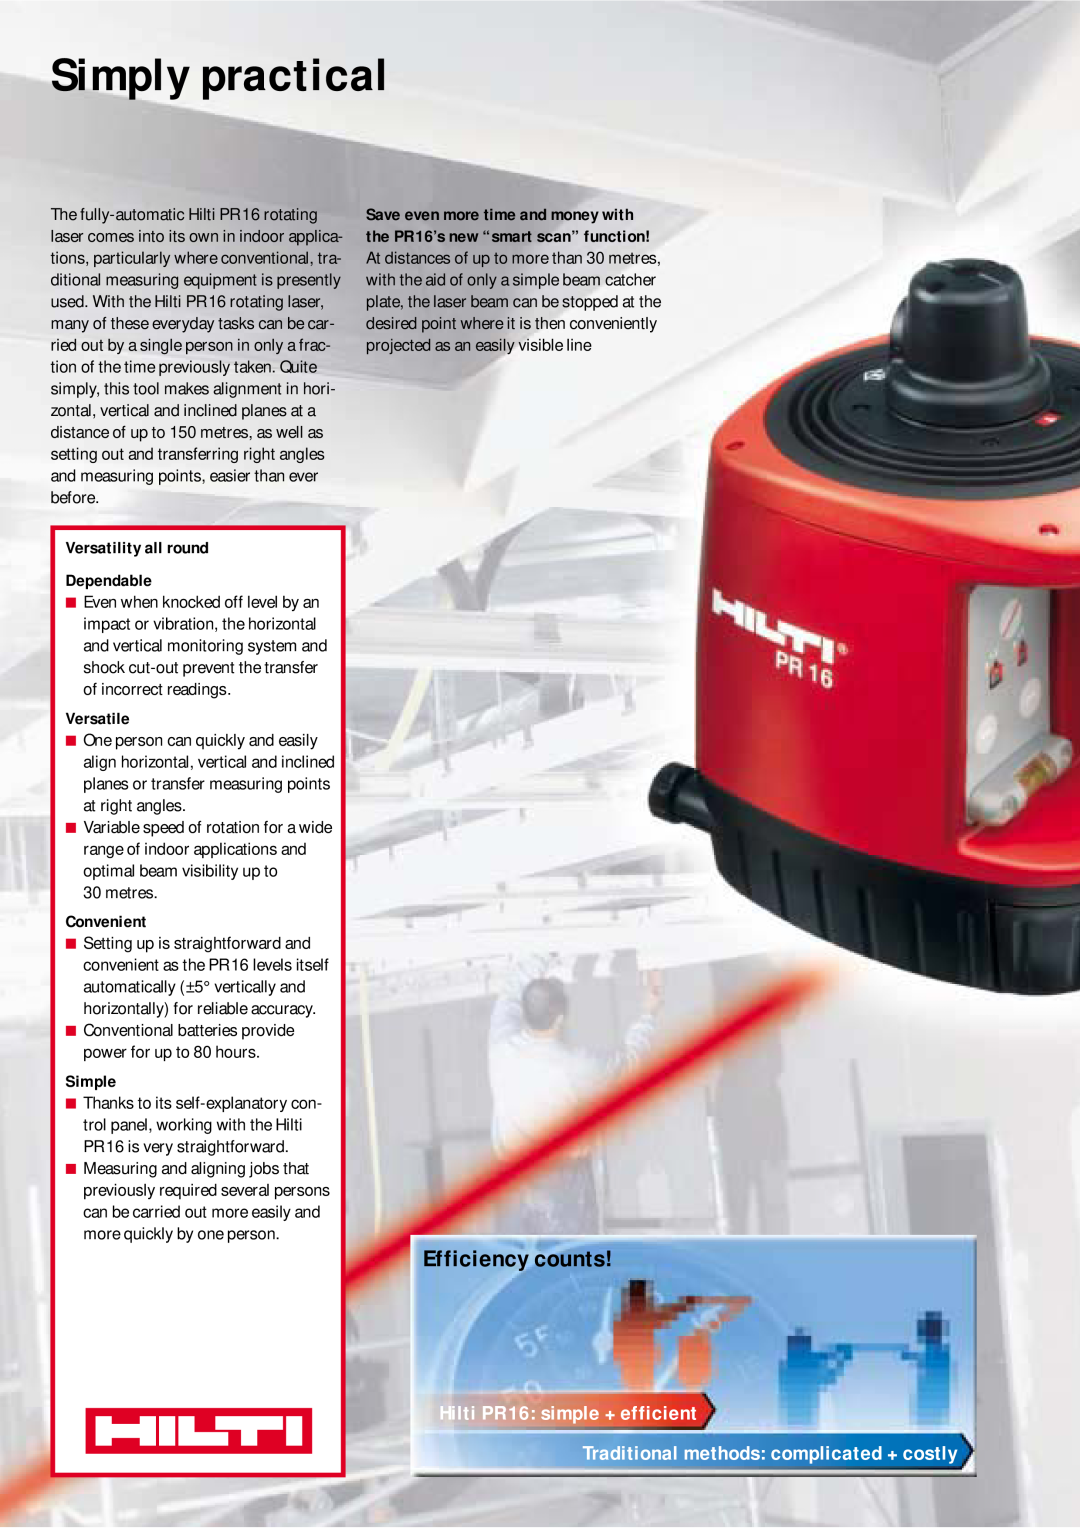 Hilti PR 16 manual Simply practical, Efficiency counts, Versatility all round Dependable, Versatile, Convenient, Simple 